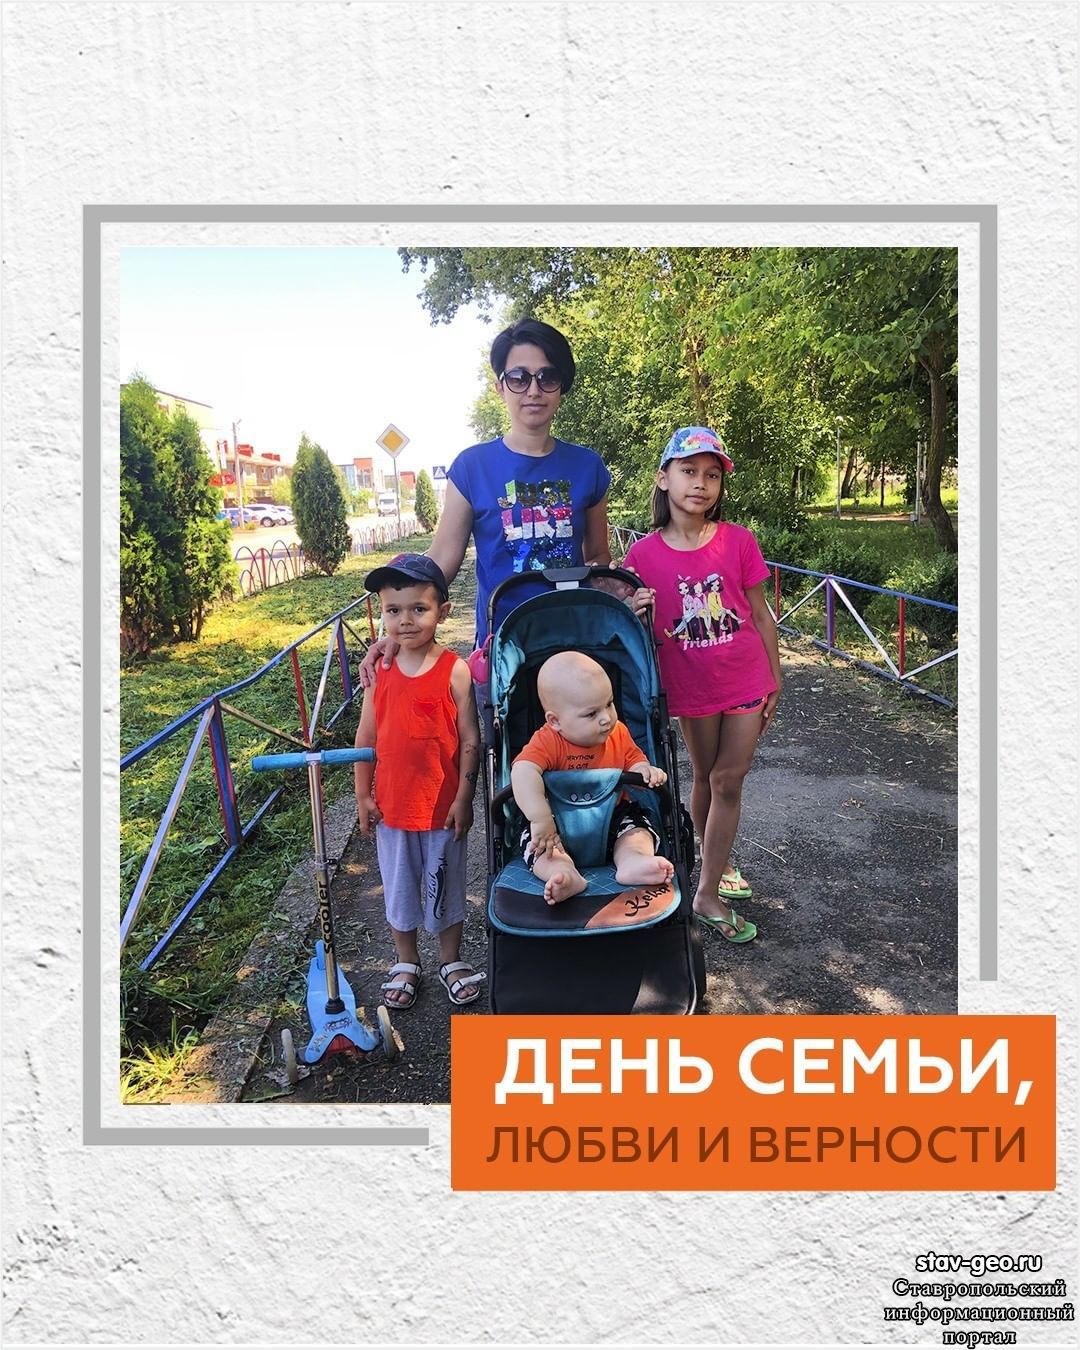 Поздравляем со Всероссийским днем семьи, любви и верности!